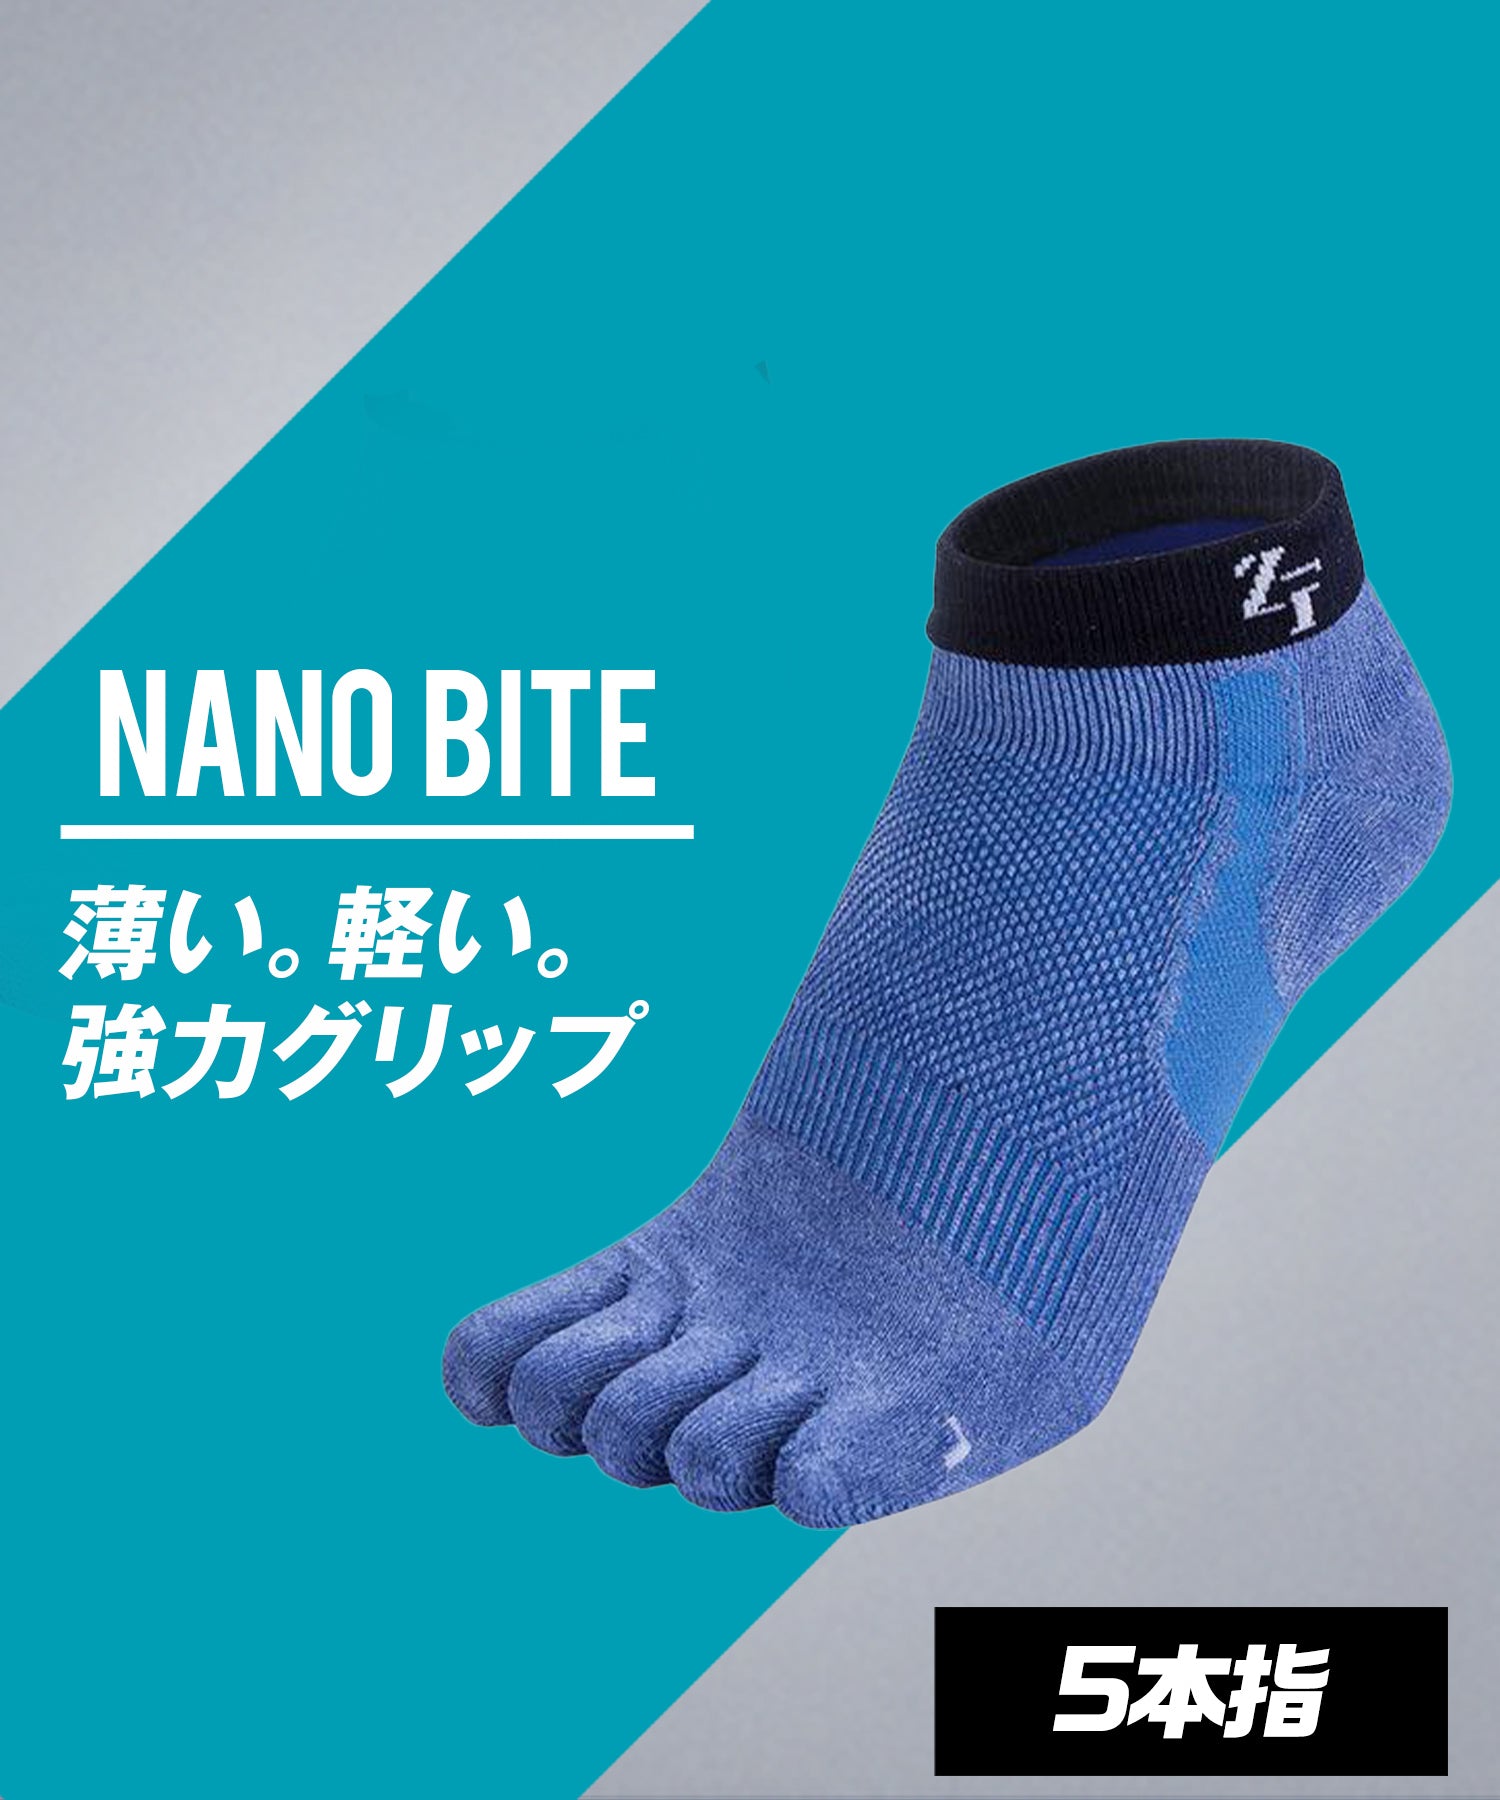 Nanobite Socks Short 5 Fingers